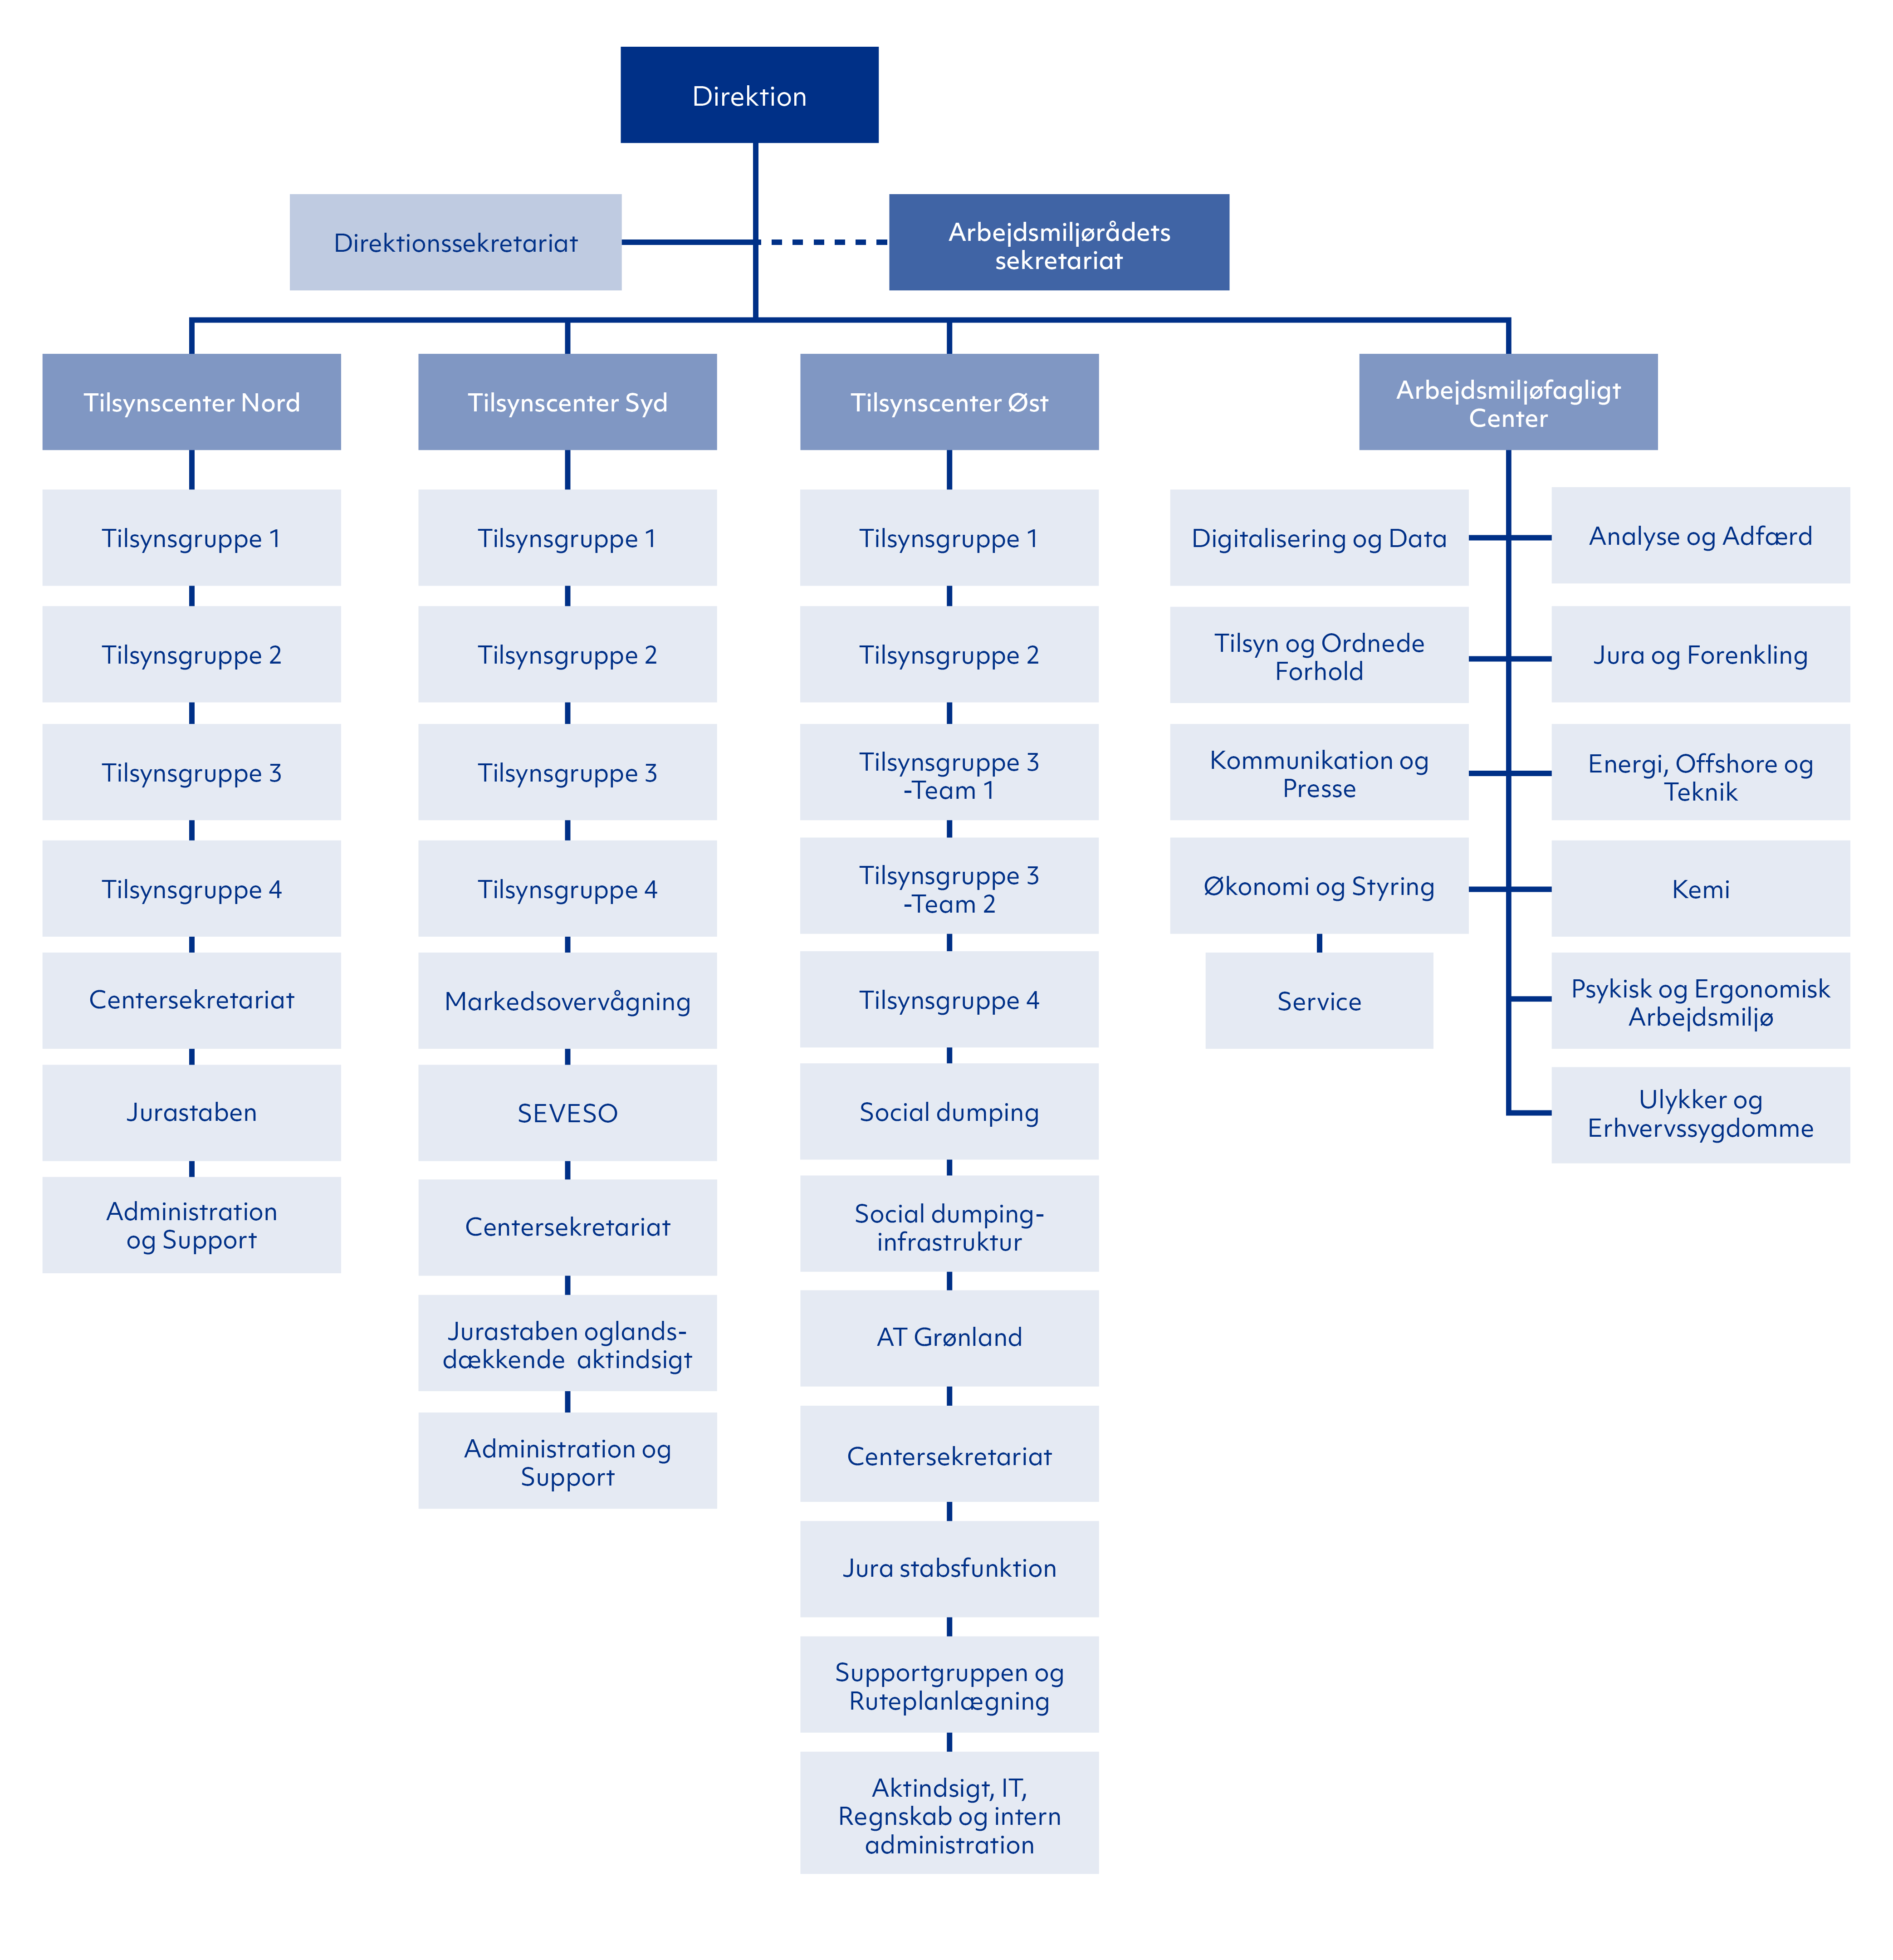 Organisationsdiagram over Arbejdstilsynet